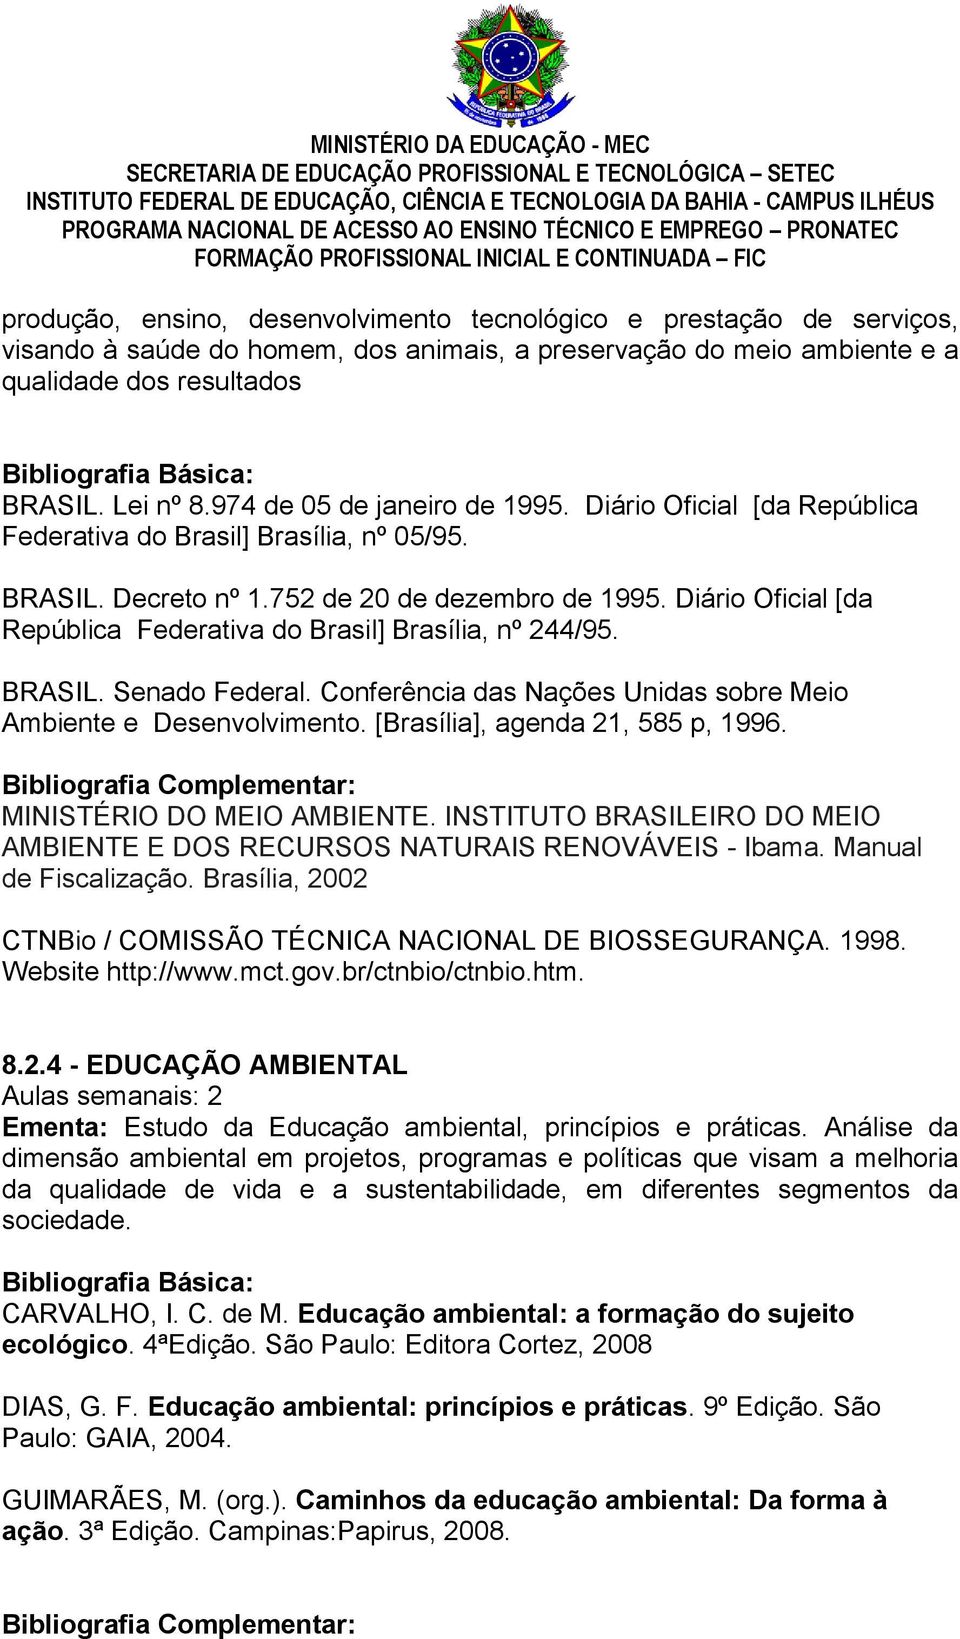 Diário Oficial [da República Federativa do Brasil] Brasília, nº 244/95. BRASIL. Senado Federal. Conferência das Nações Unidas sobre Meio Ambiente e Desenvolvimento. [Brasília], agenda 21, 585 p, 1996.